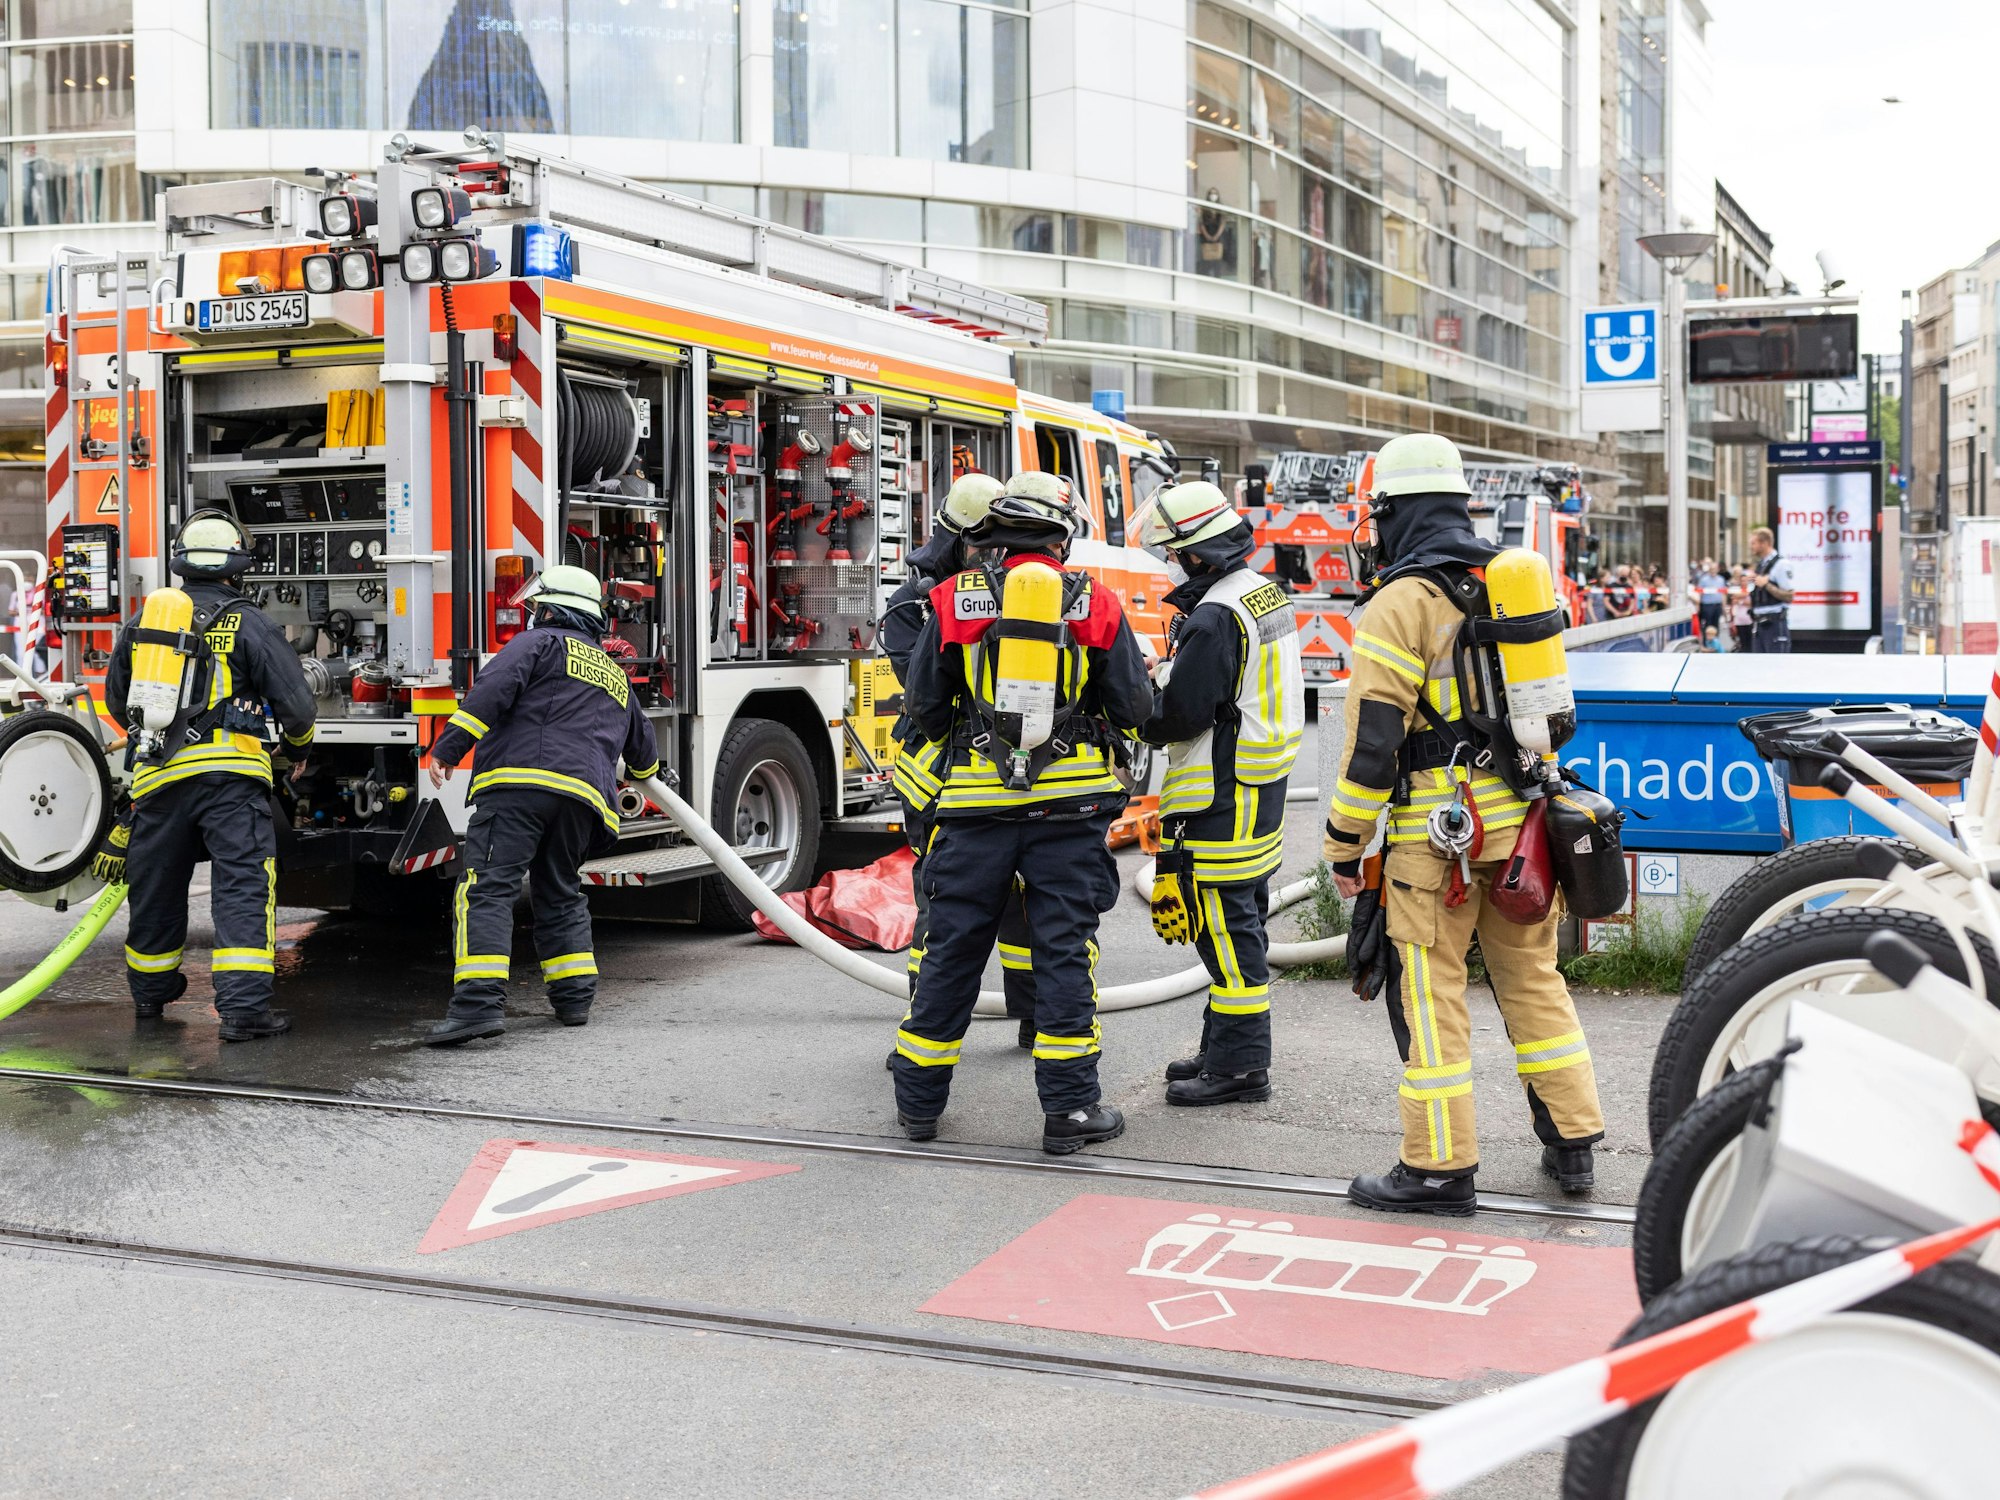 Zahlreiche Einsatzkräfte der Feuerwehr stehen am 12. Juli 2021 vor dem U-Bahnhof Schadowstraße.